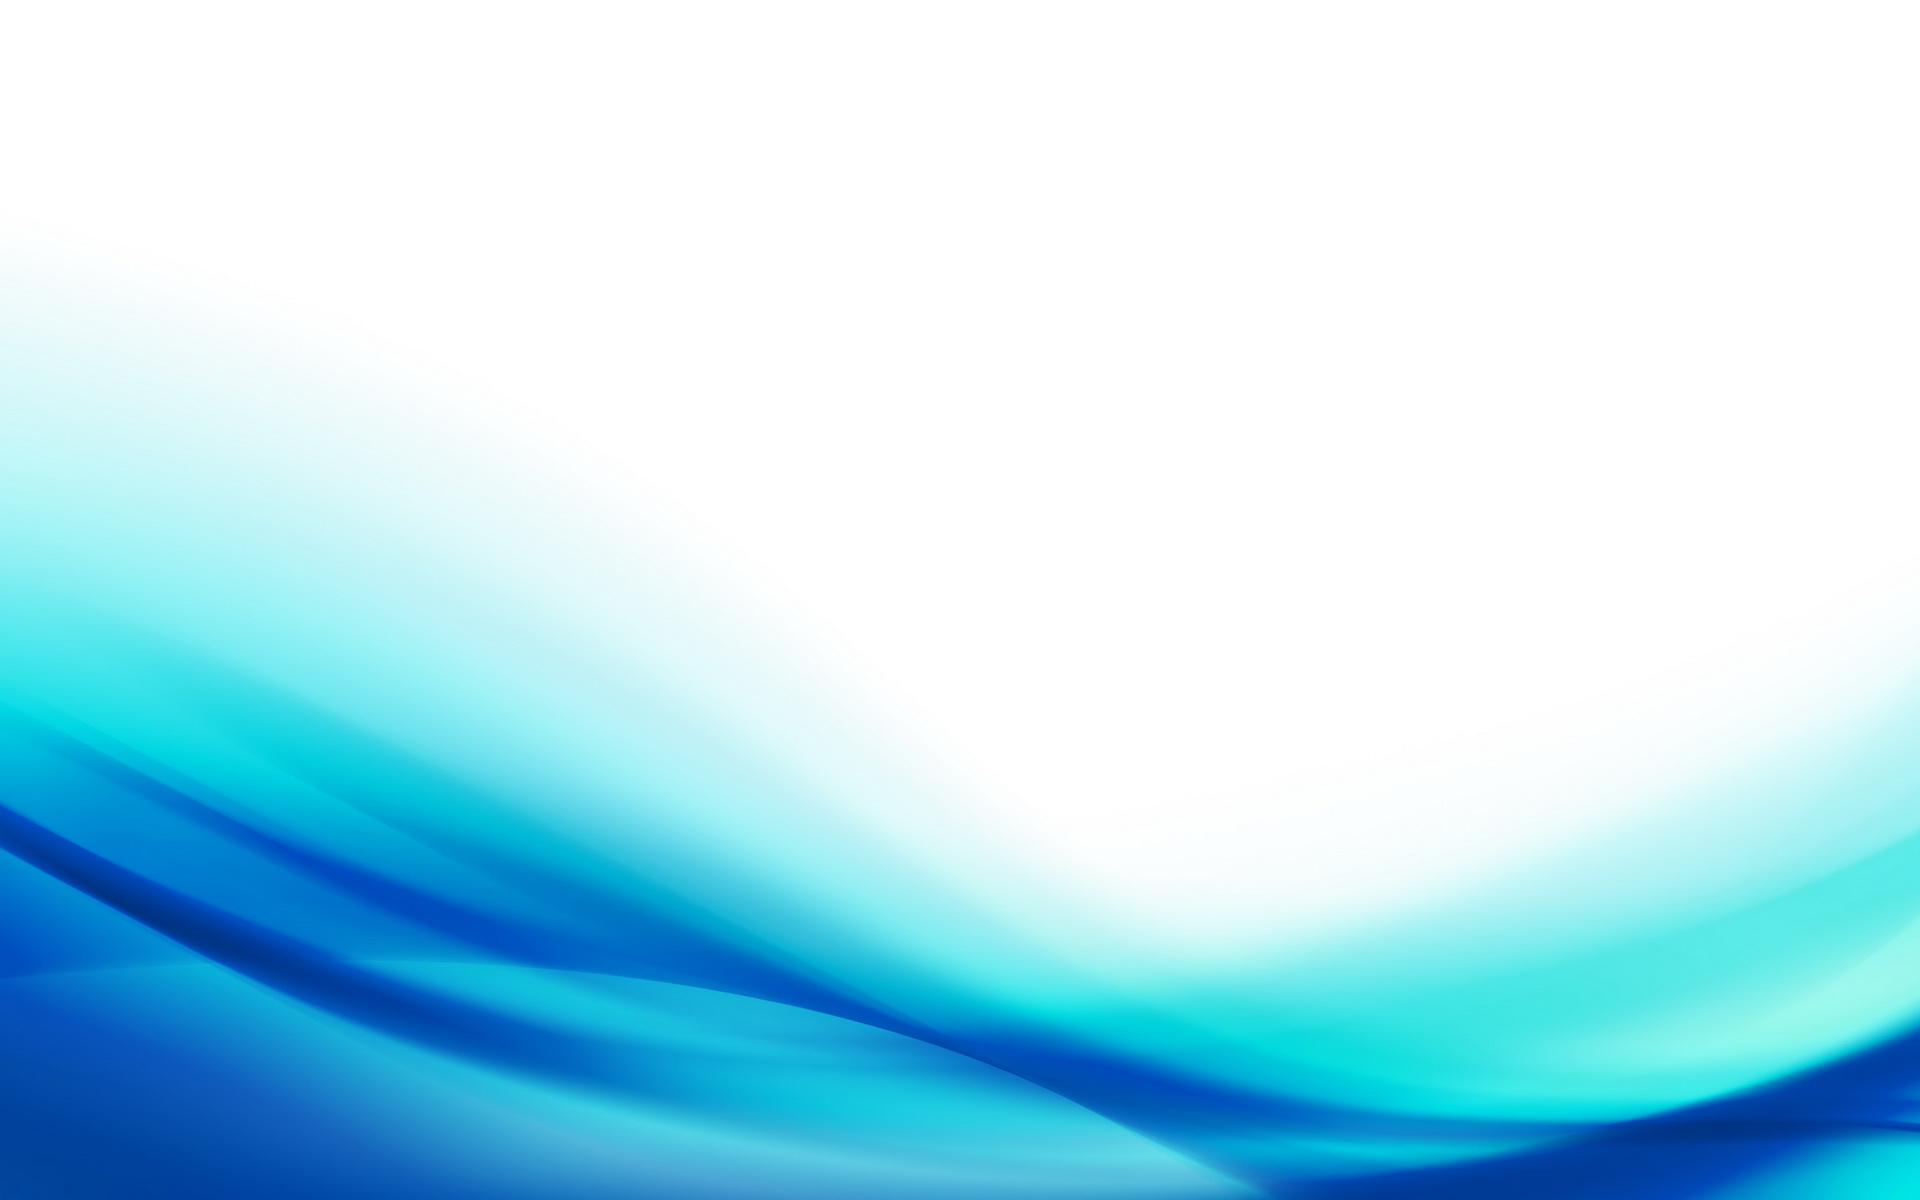 fondo de pantalla azul claro hd,azul,agua,turquesa,verde azulado,agua